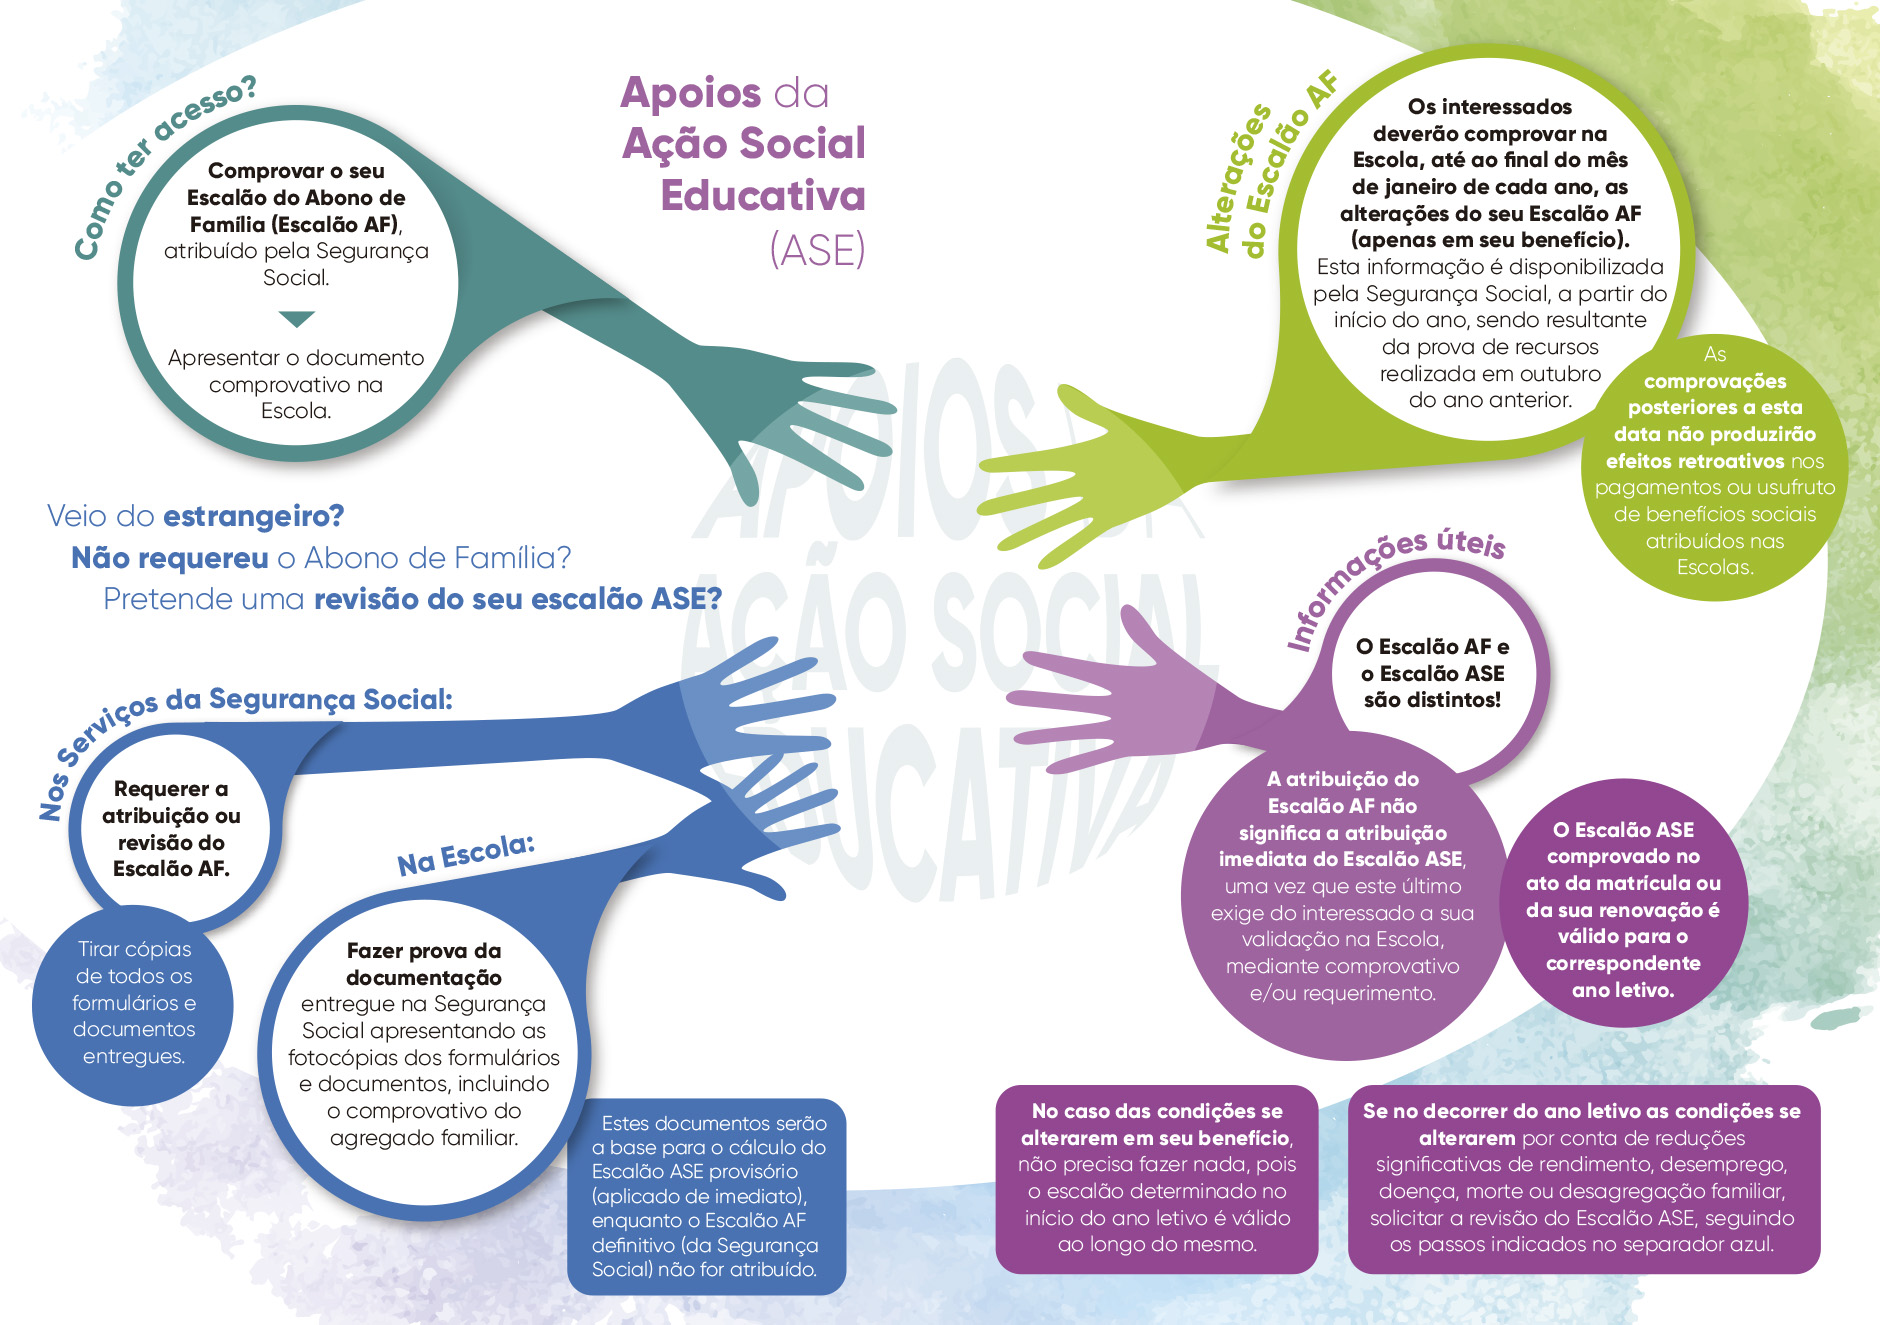 Atribuição e Revisão do Escalão da Ação Social Educativa (ASE)